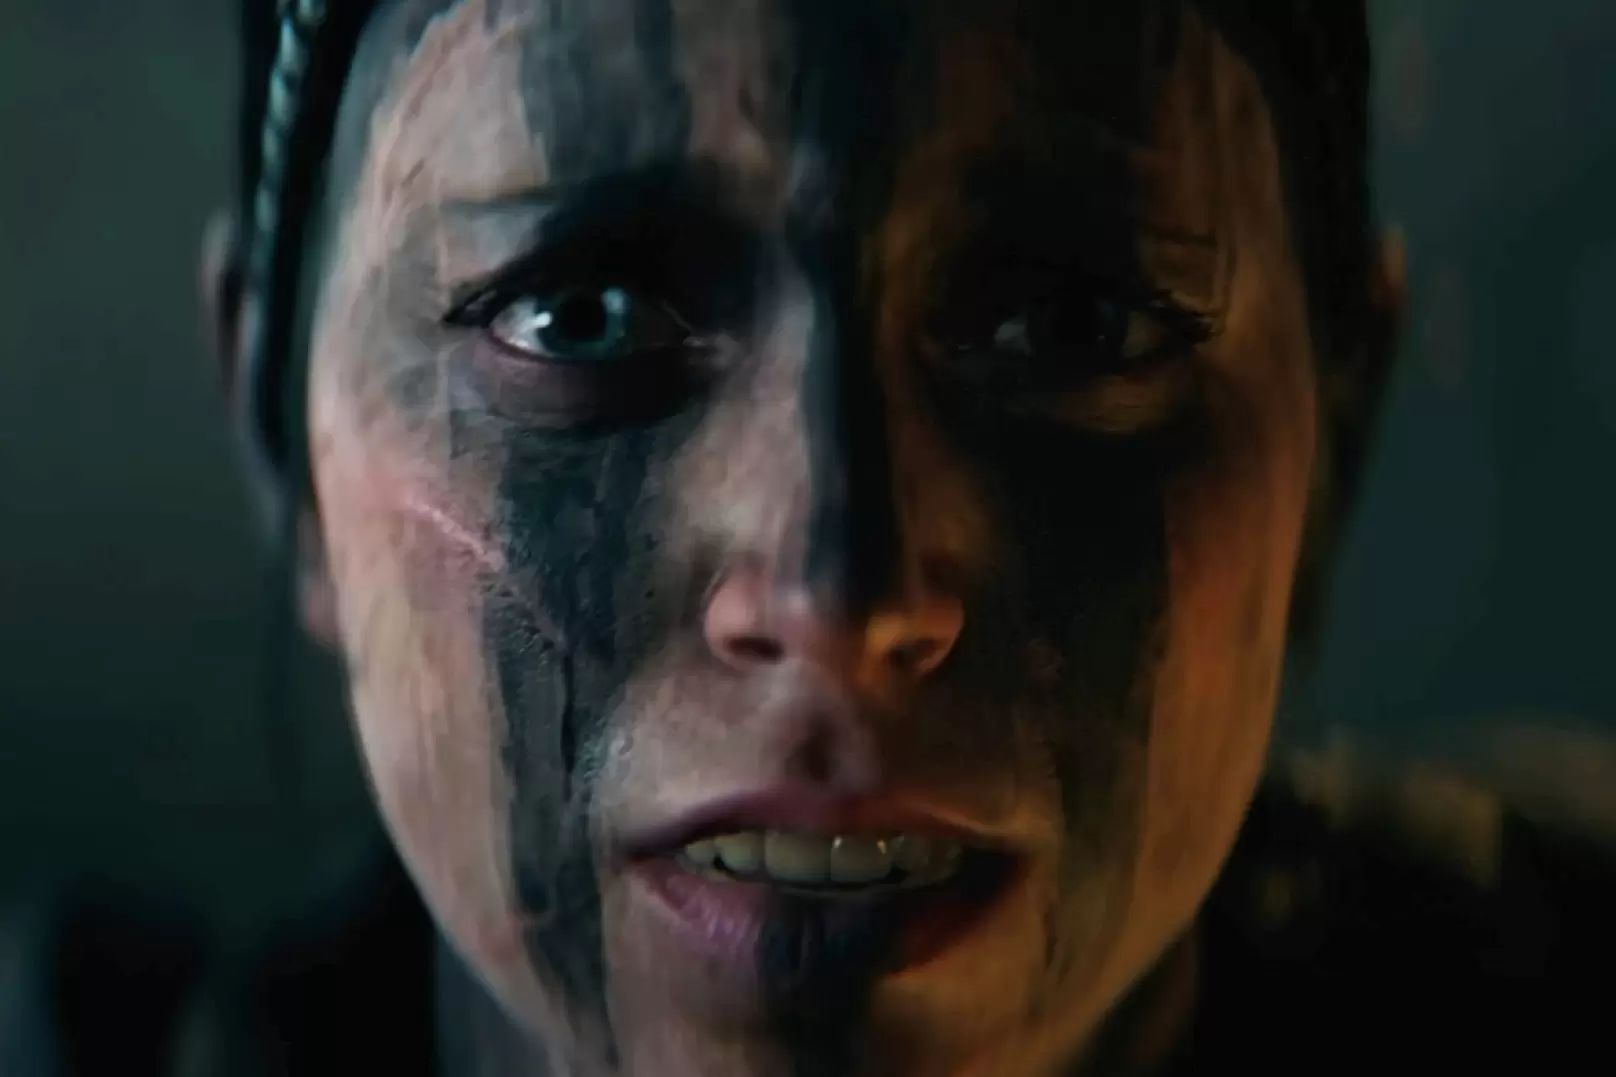 بازیگر Hellblade 2 می خواهد اگاهی از سلامت روان را با بازی افزایش دهد